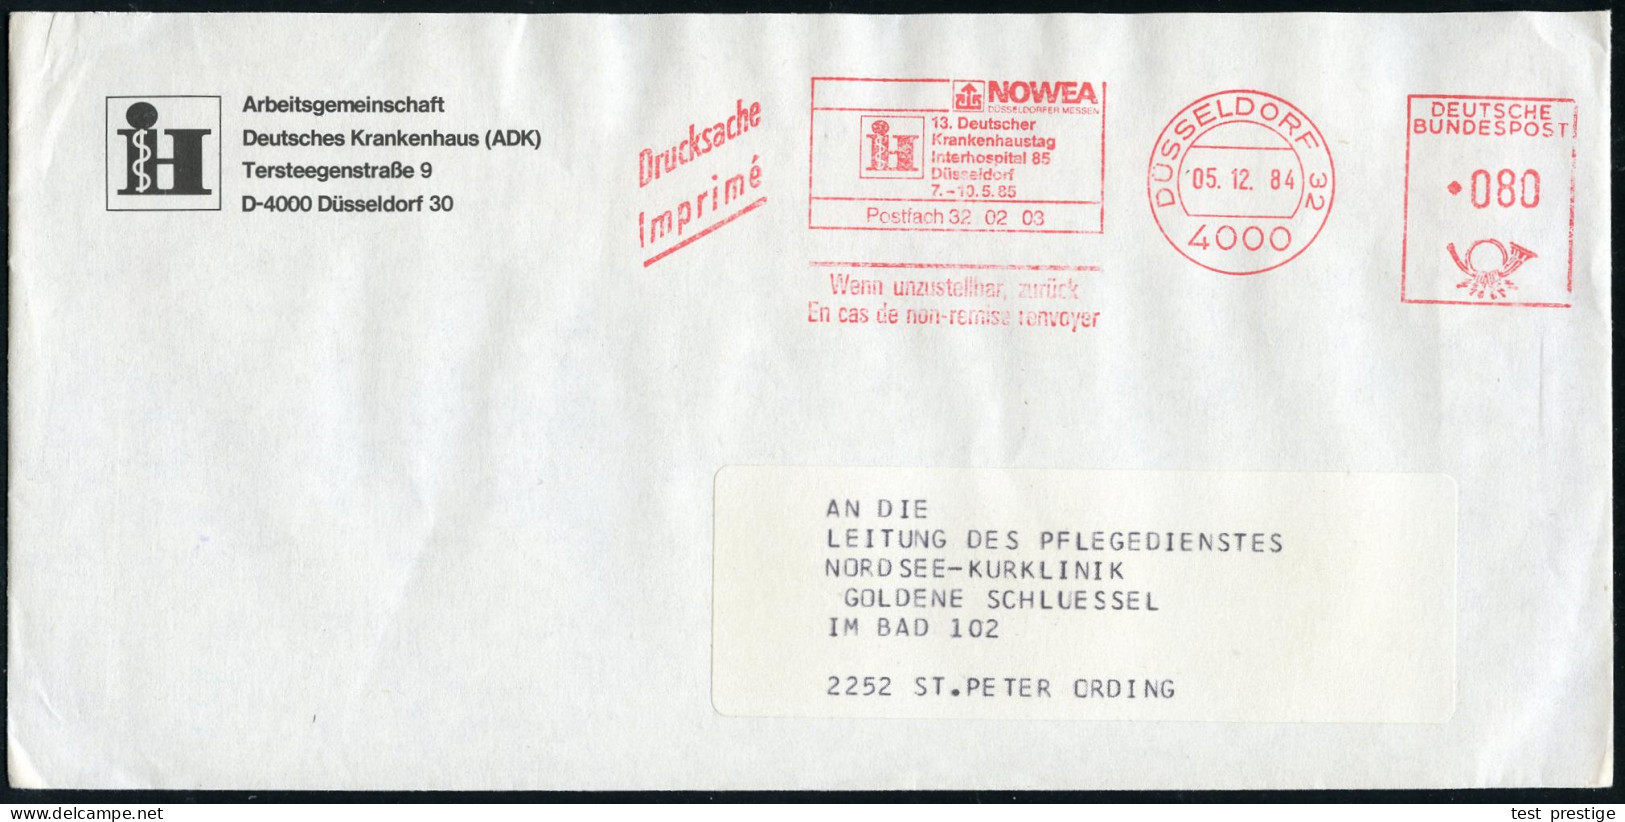 4000 DÜSSELDORF 32/ NOWEA/ !&sect;:Deutscher/ Krankenhaustag/ Interhospital 85.. 1984 (5.12.) AFS (Logo) Auf Vordruck-Bf - Geneeskunde